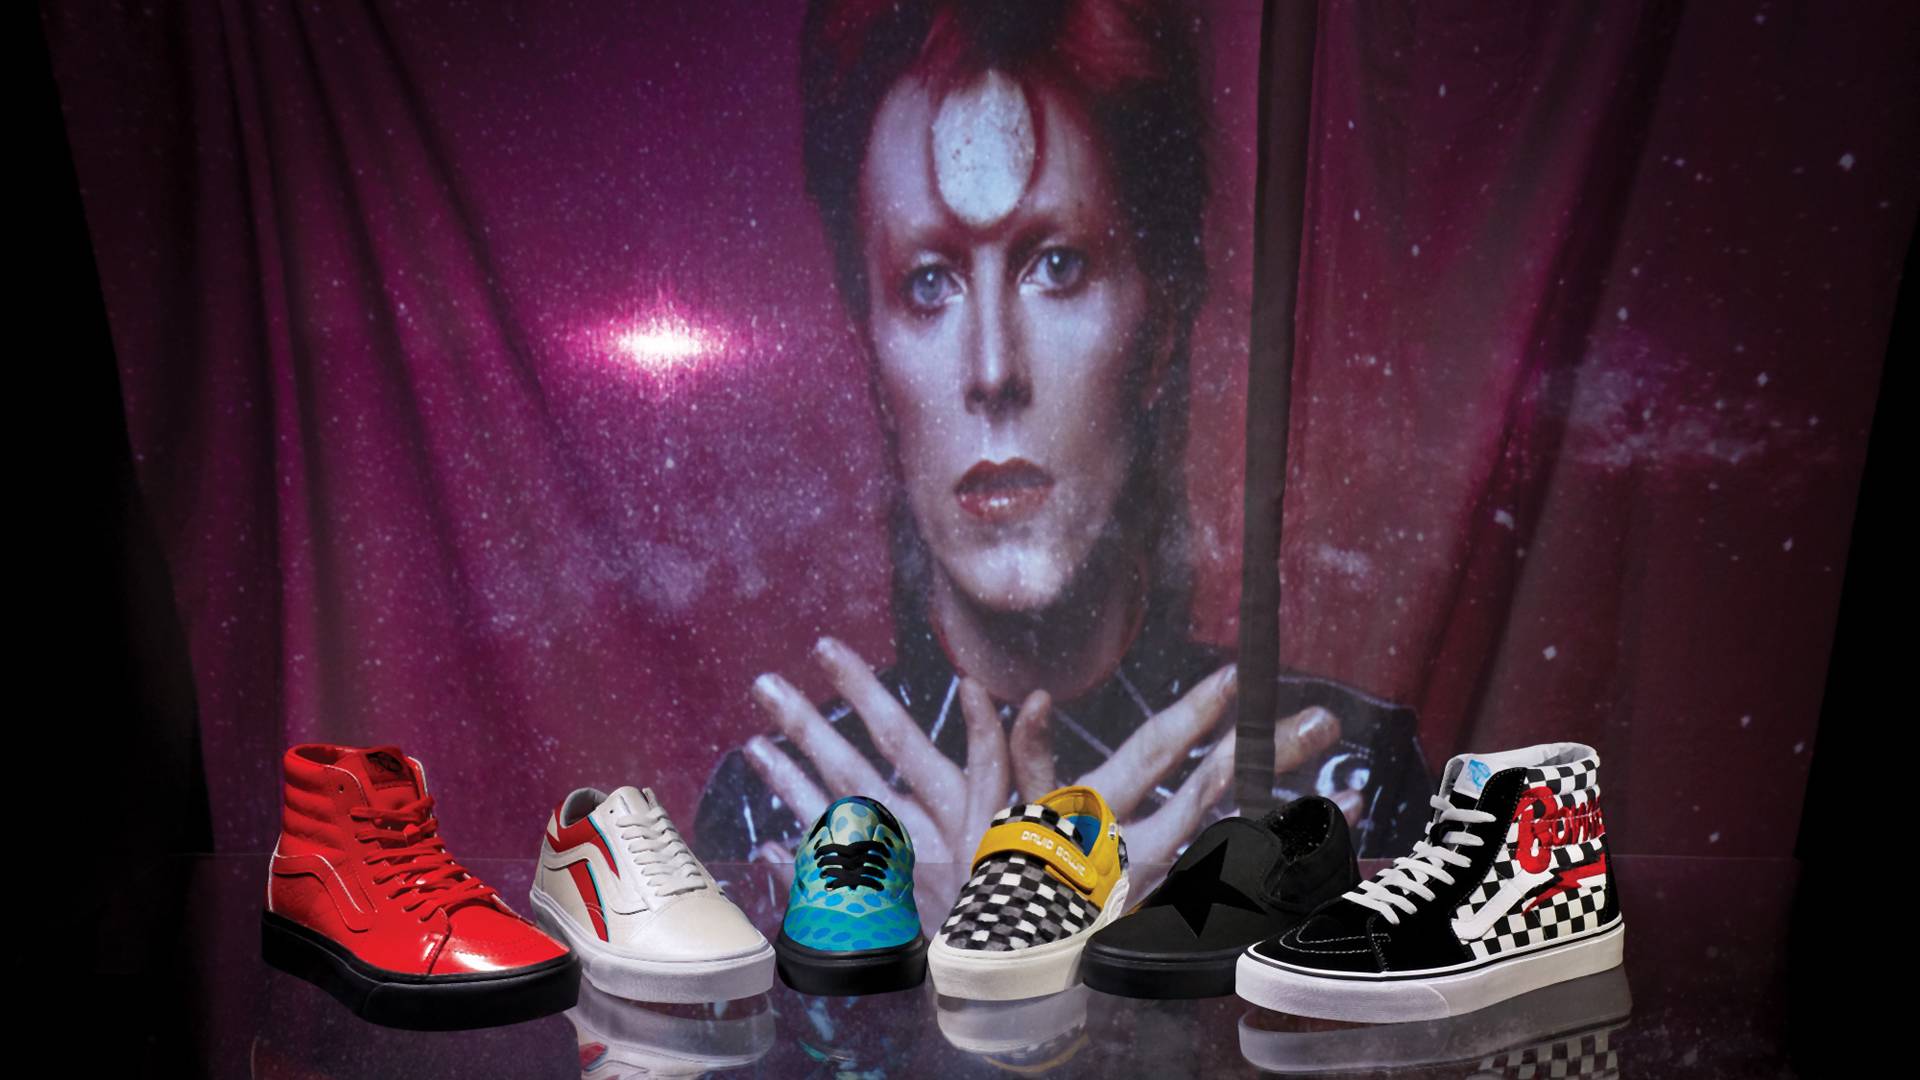 Kolekcja Vans x David Bowie inspirowana ikonicznymi wizerunkami artysty